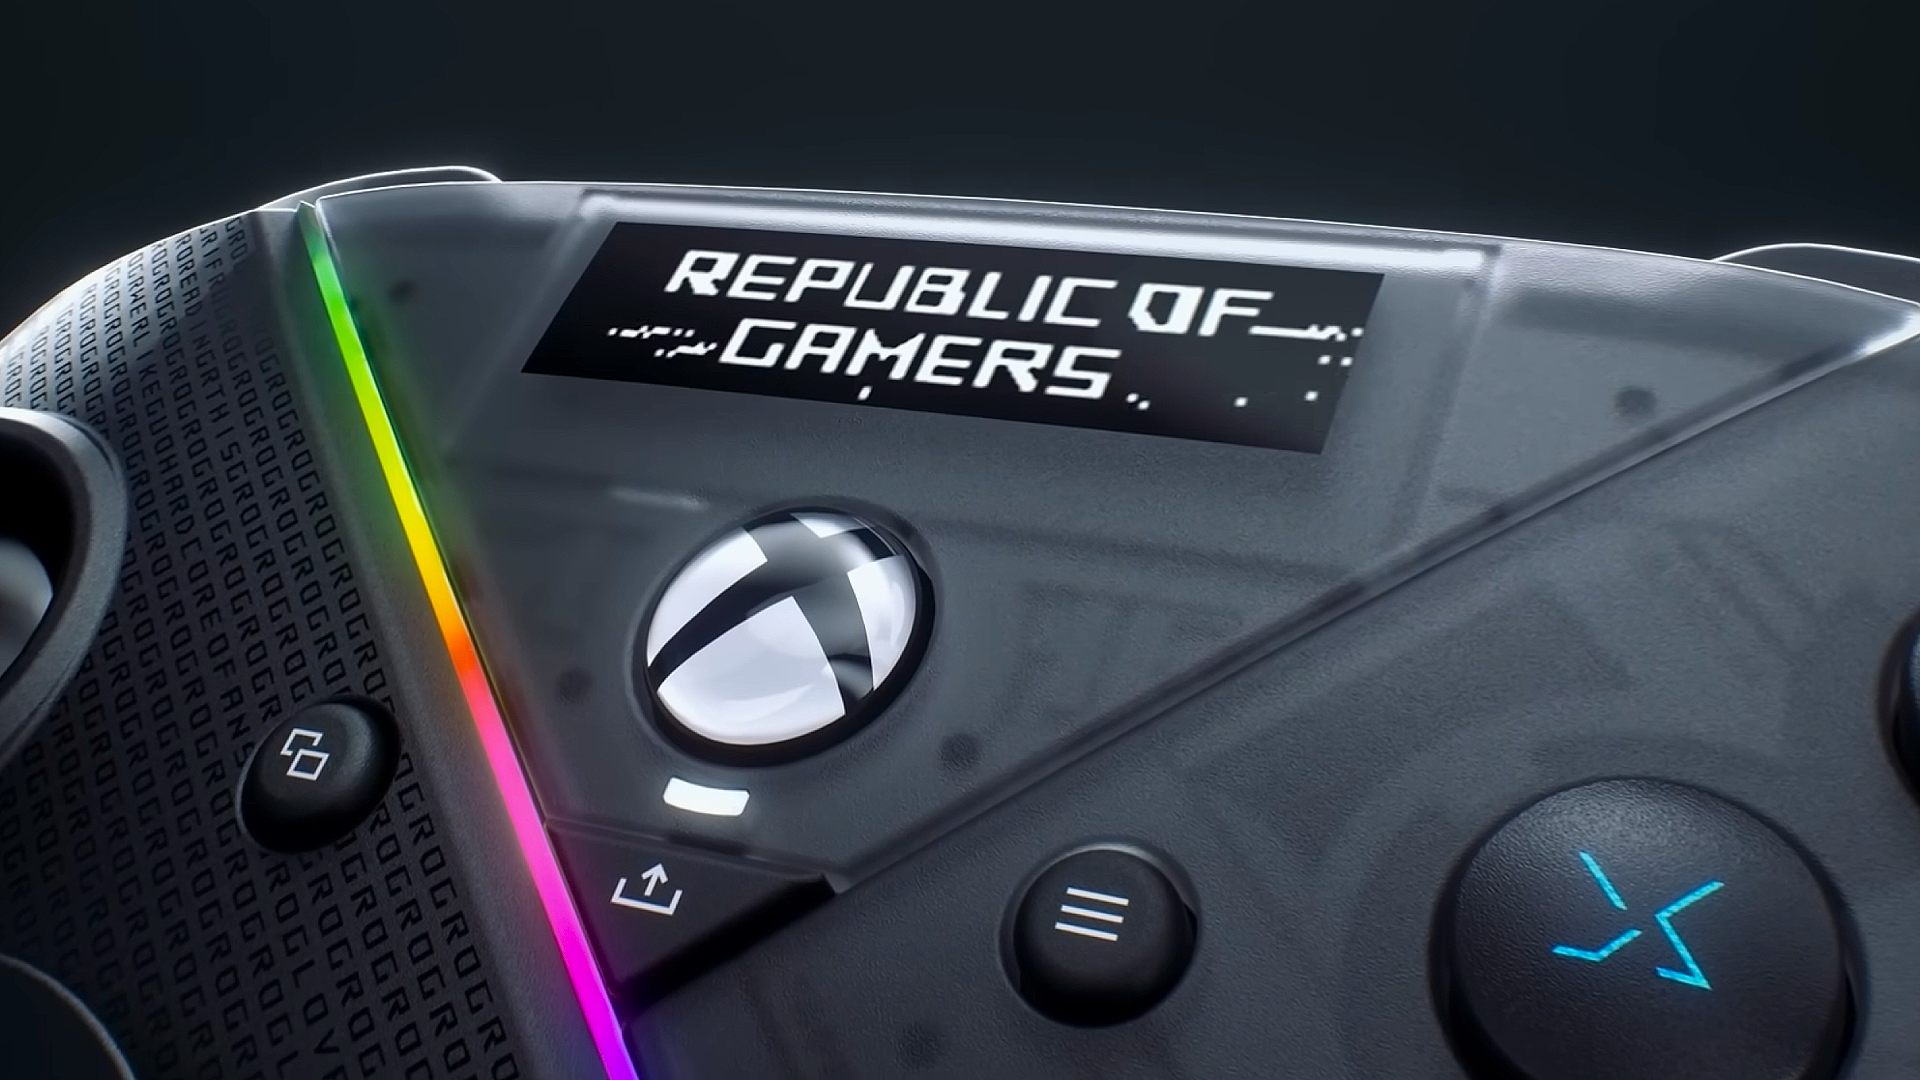 Nahaufnahme des Bildschirms des Asus ROG OLED-Controllers mit angezeigtem Republic of Gamers-Text und LED-Streifen am Controller-Gehäuse